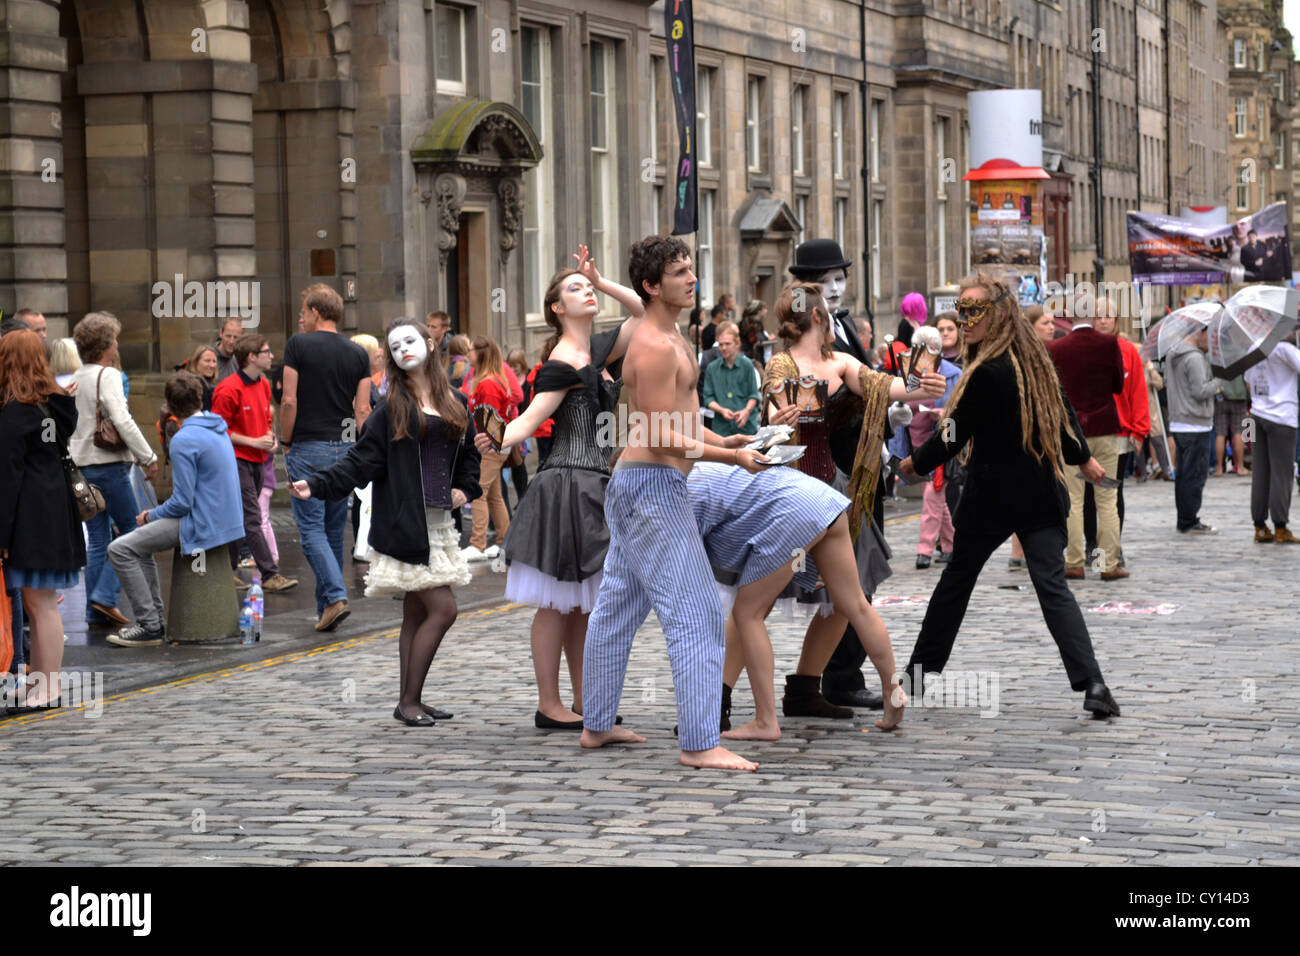 Groupe d'acteurs montrent la publicité dans la rue lors du Festival Fringe d'Édimbourg, du Royal Mile, Édimbourg, Écosse. Banque D'Images